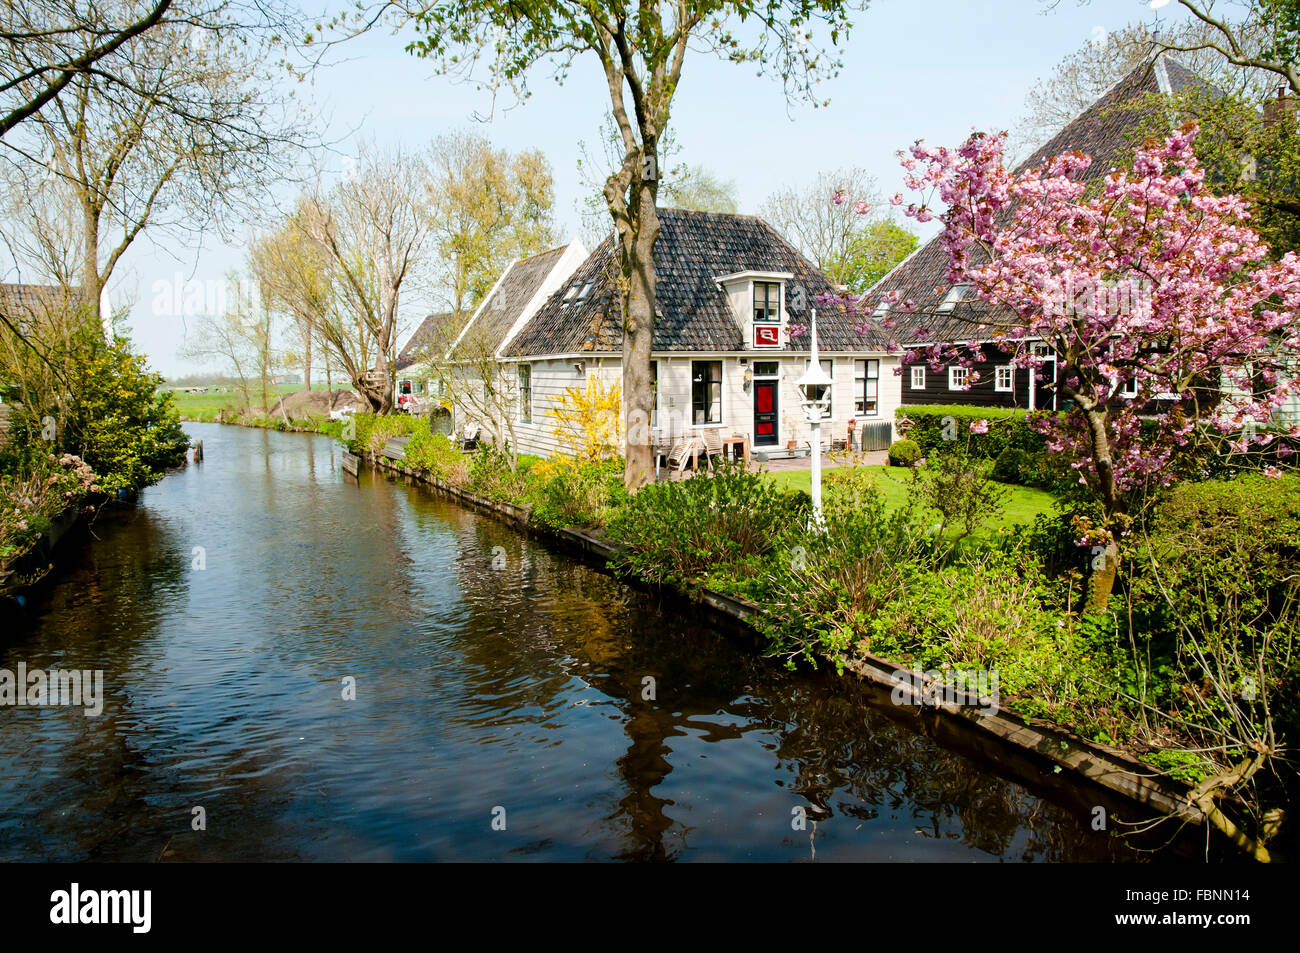 Broek in Waterland - Netherlands Stock Photo - Alamy